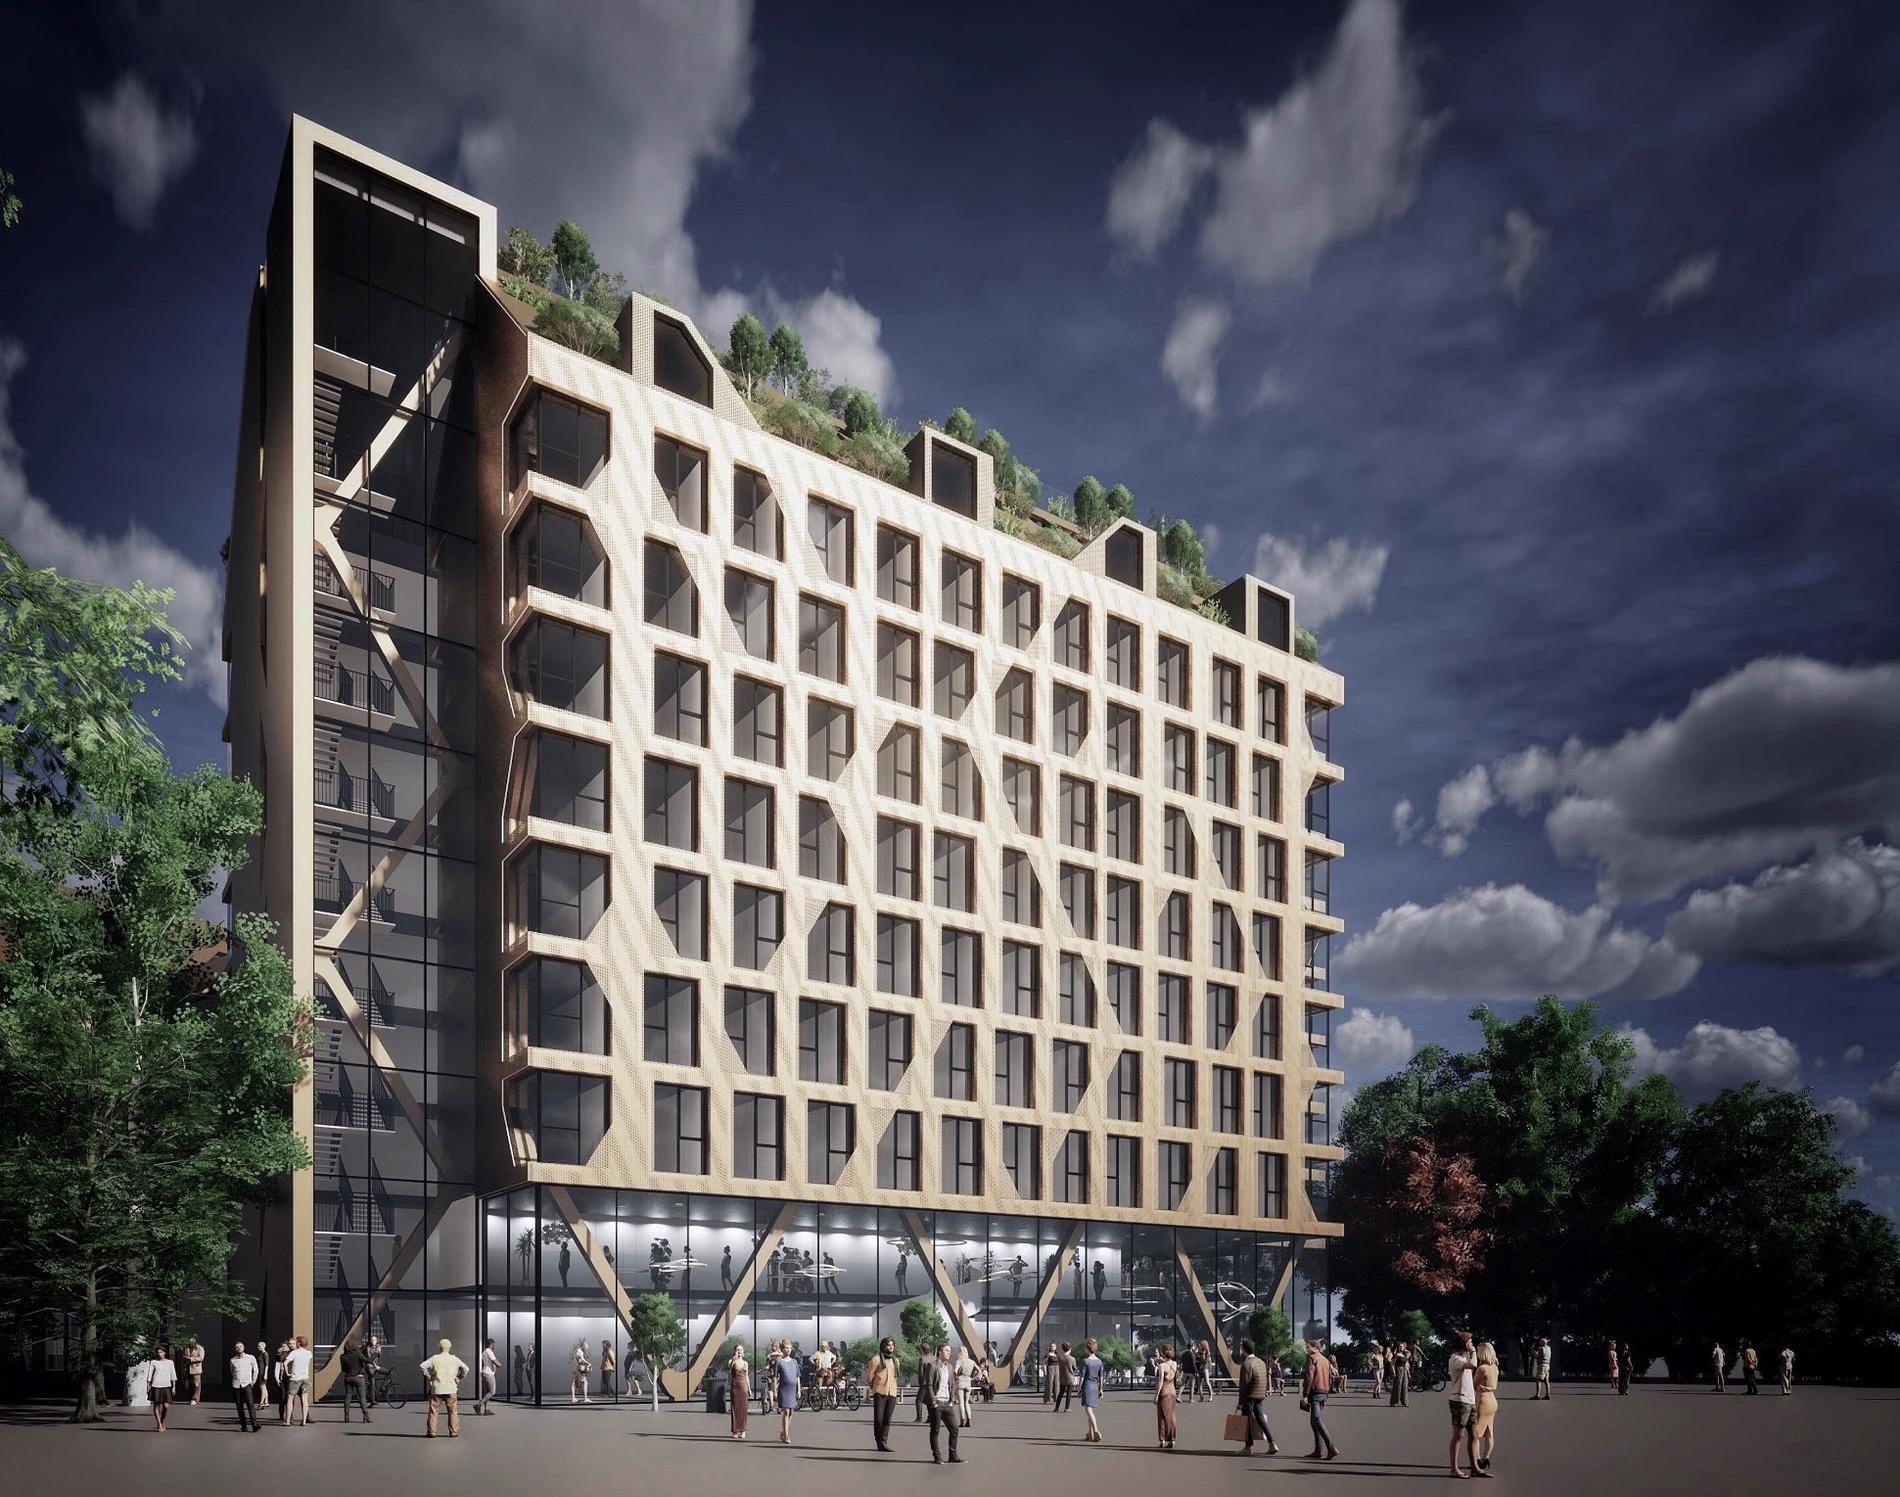 640 studentbostäder ska byggas i Västra Hamnen.